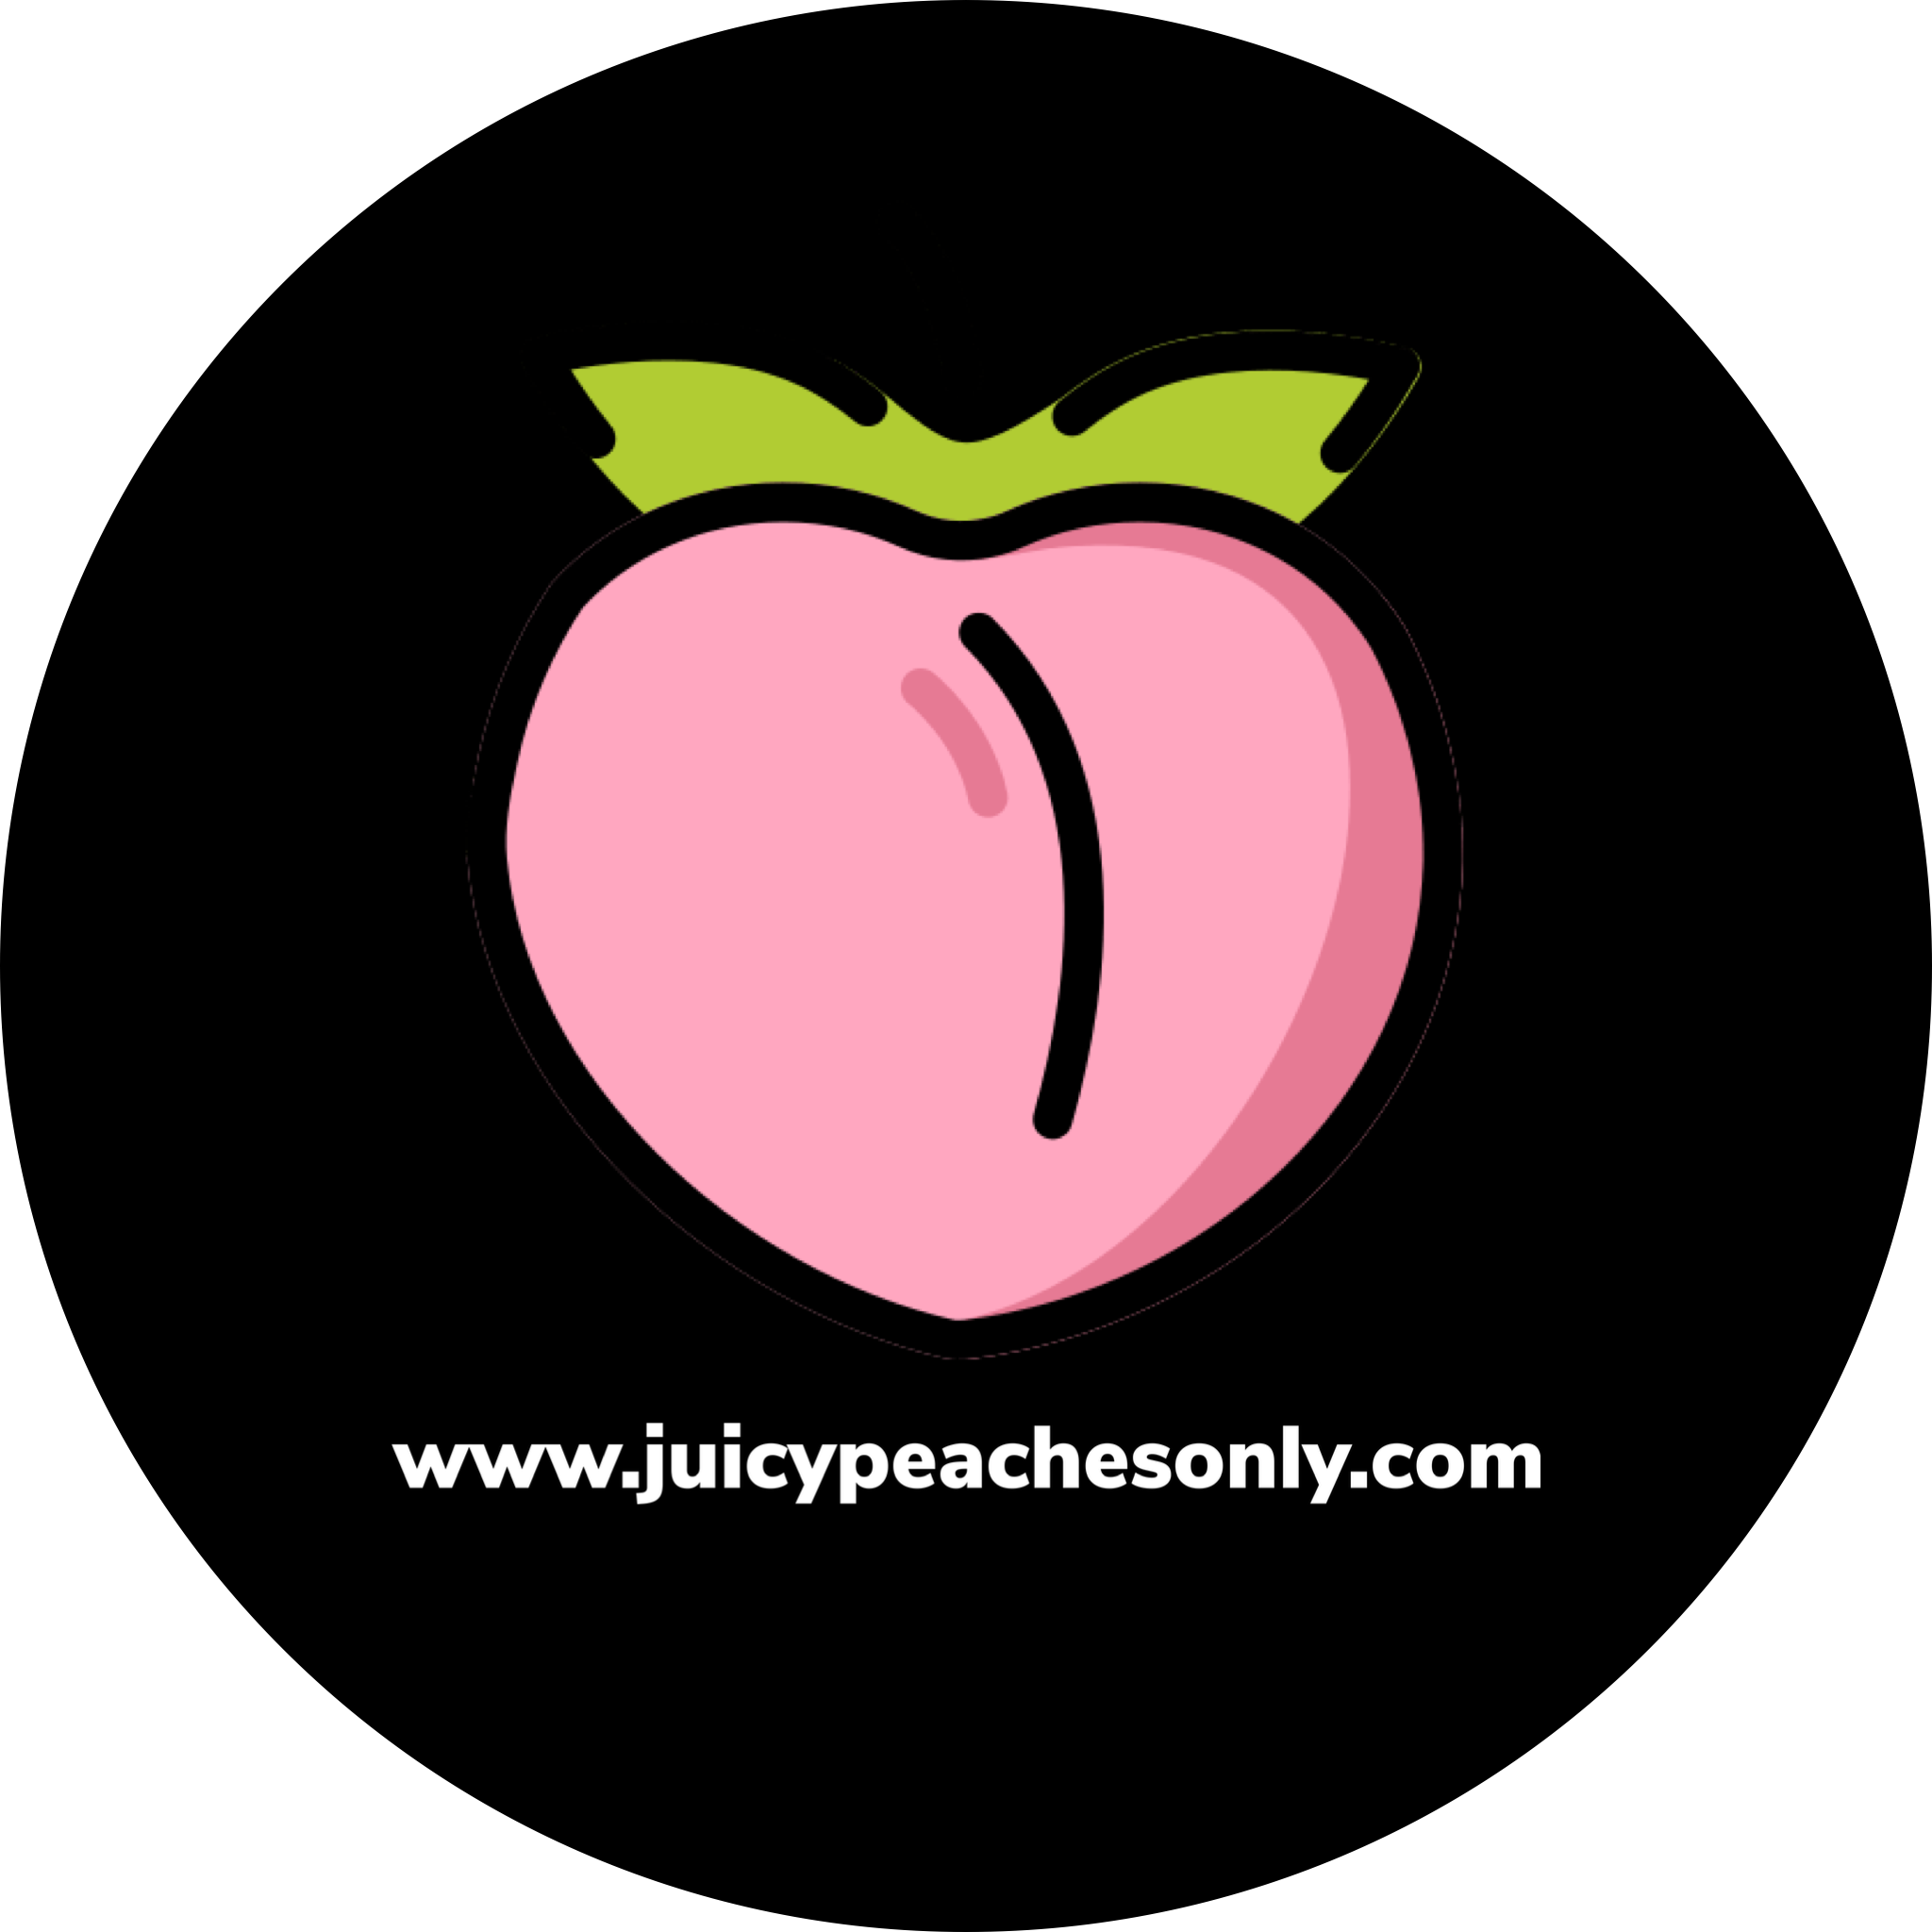 juicypeachesonly.com